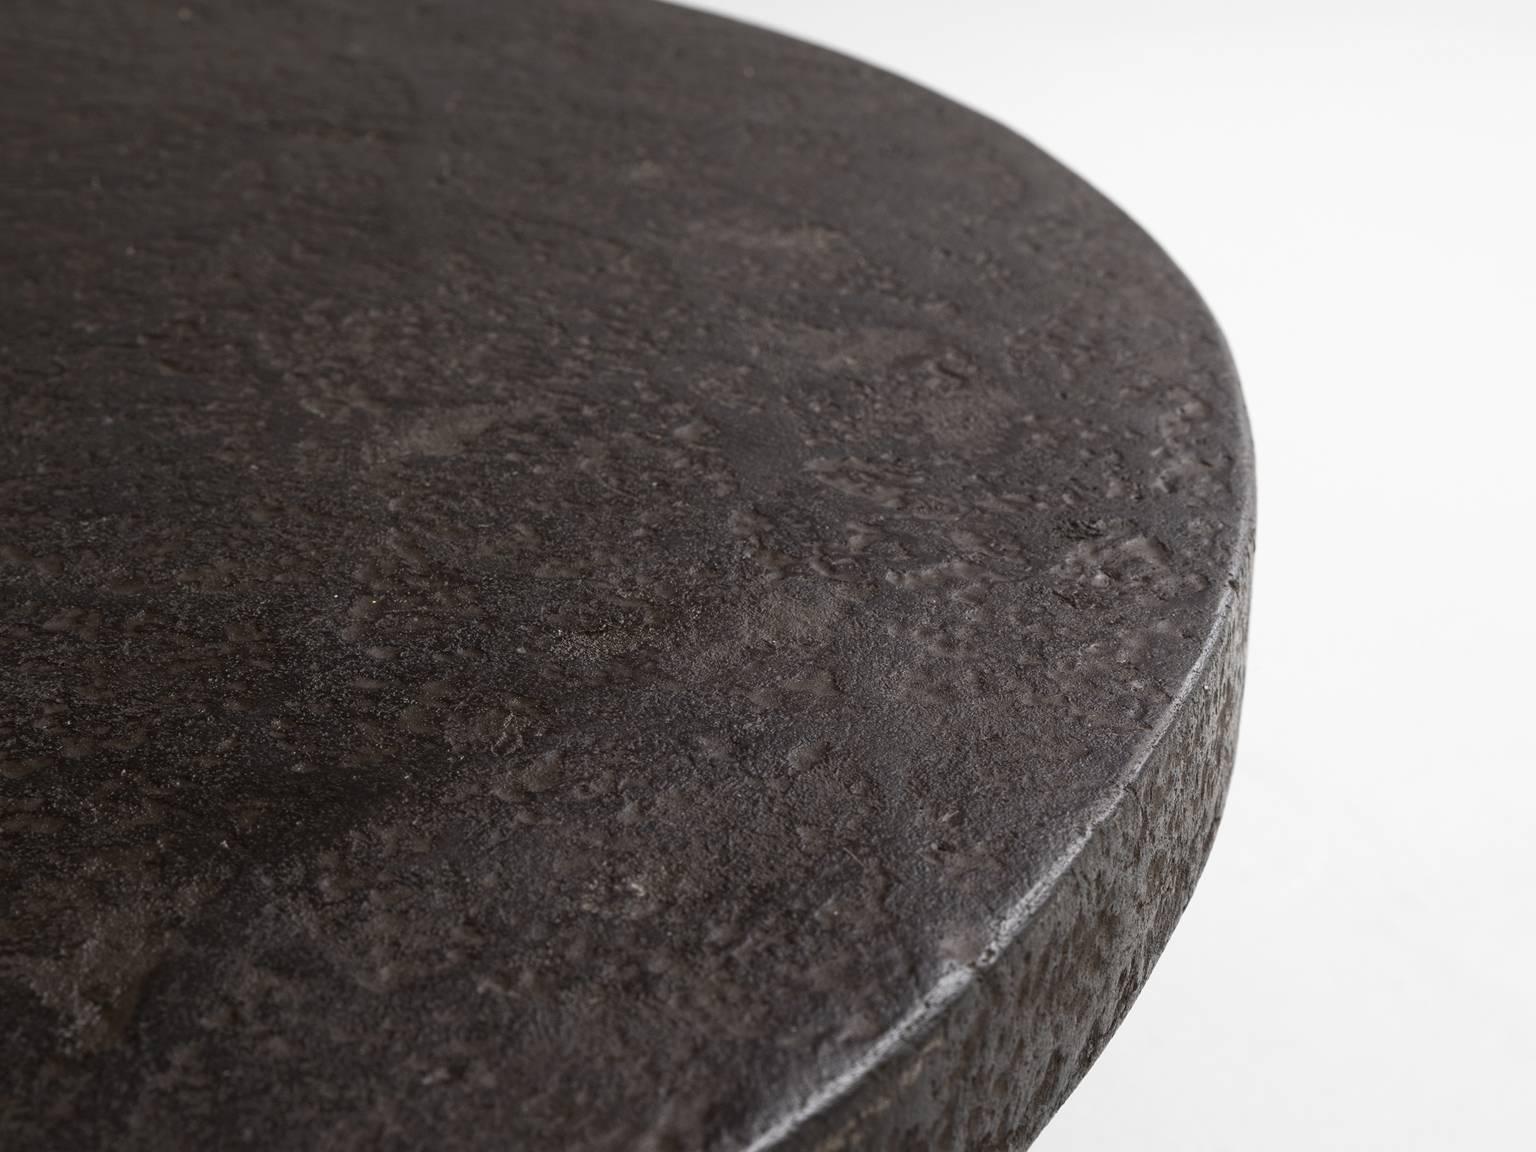 European Round Stone Iron Look Coffee Table